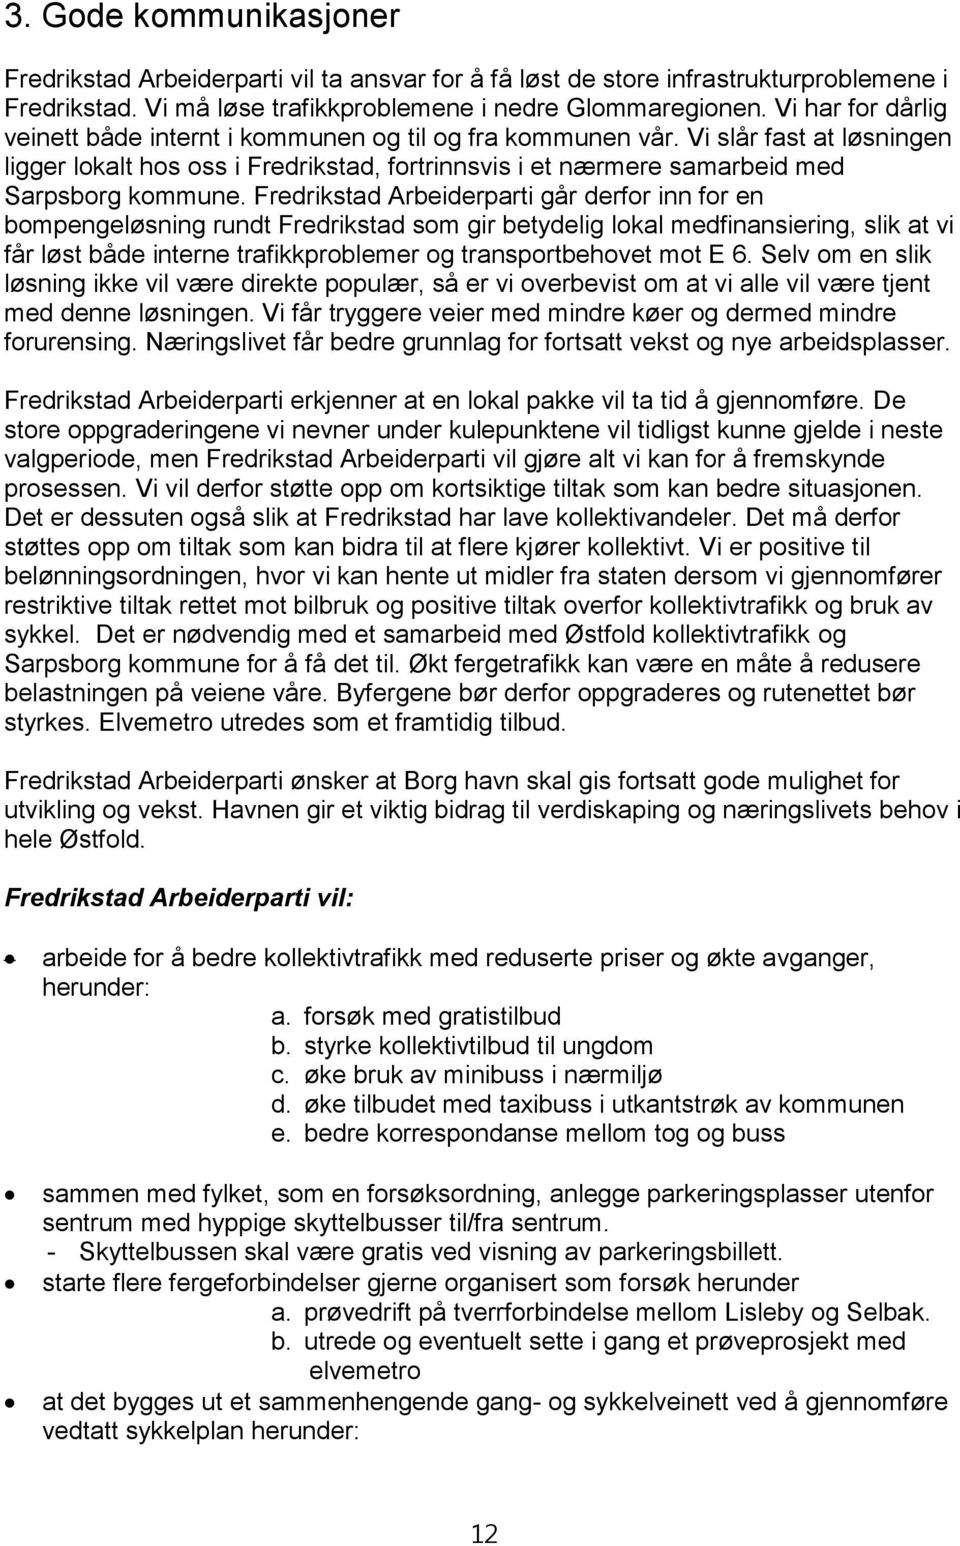 Fredrikstad Arbeiderparti går derfor inn for en bompengeløsning rundt Fredrikstad som gir betydelig lokal medfinansiering, slik at vi får løst både interne trafikkproblemer og transportbehovet mot E